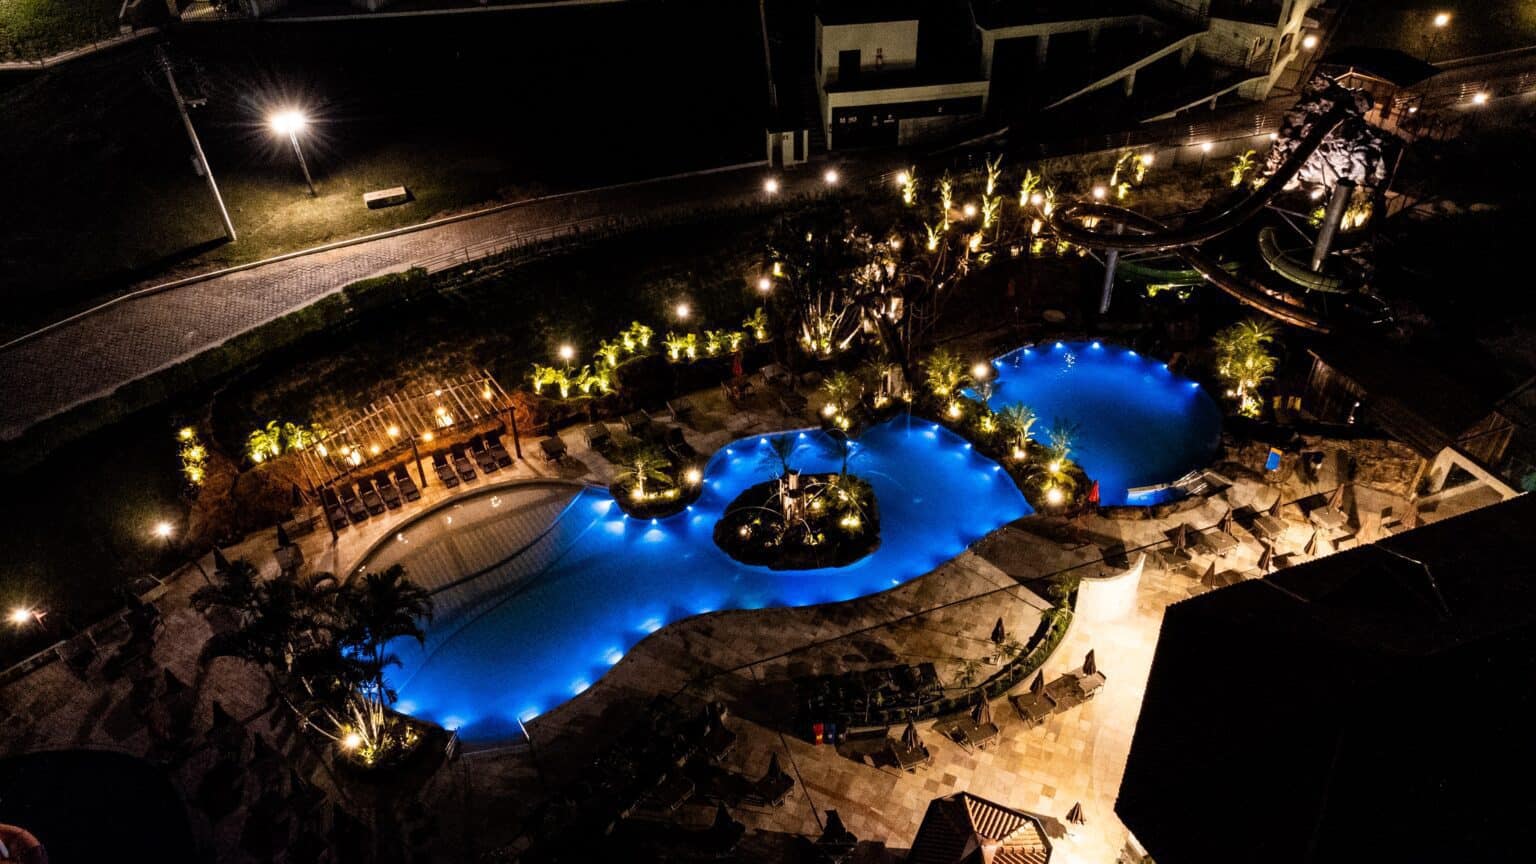 vista aérea da piscina Trem D'água com luzes durante a noite.